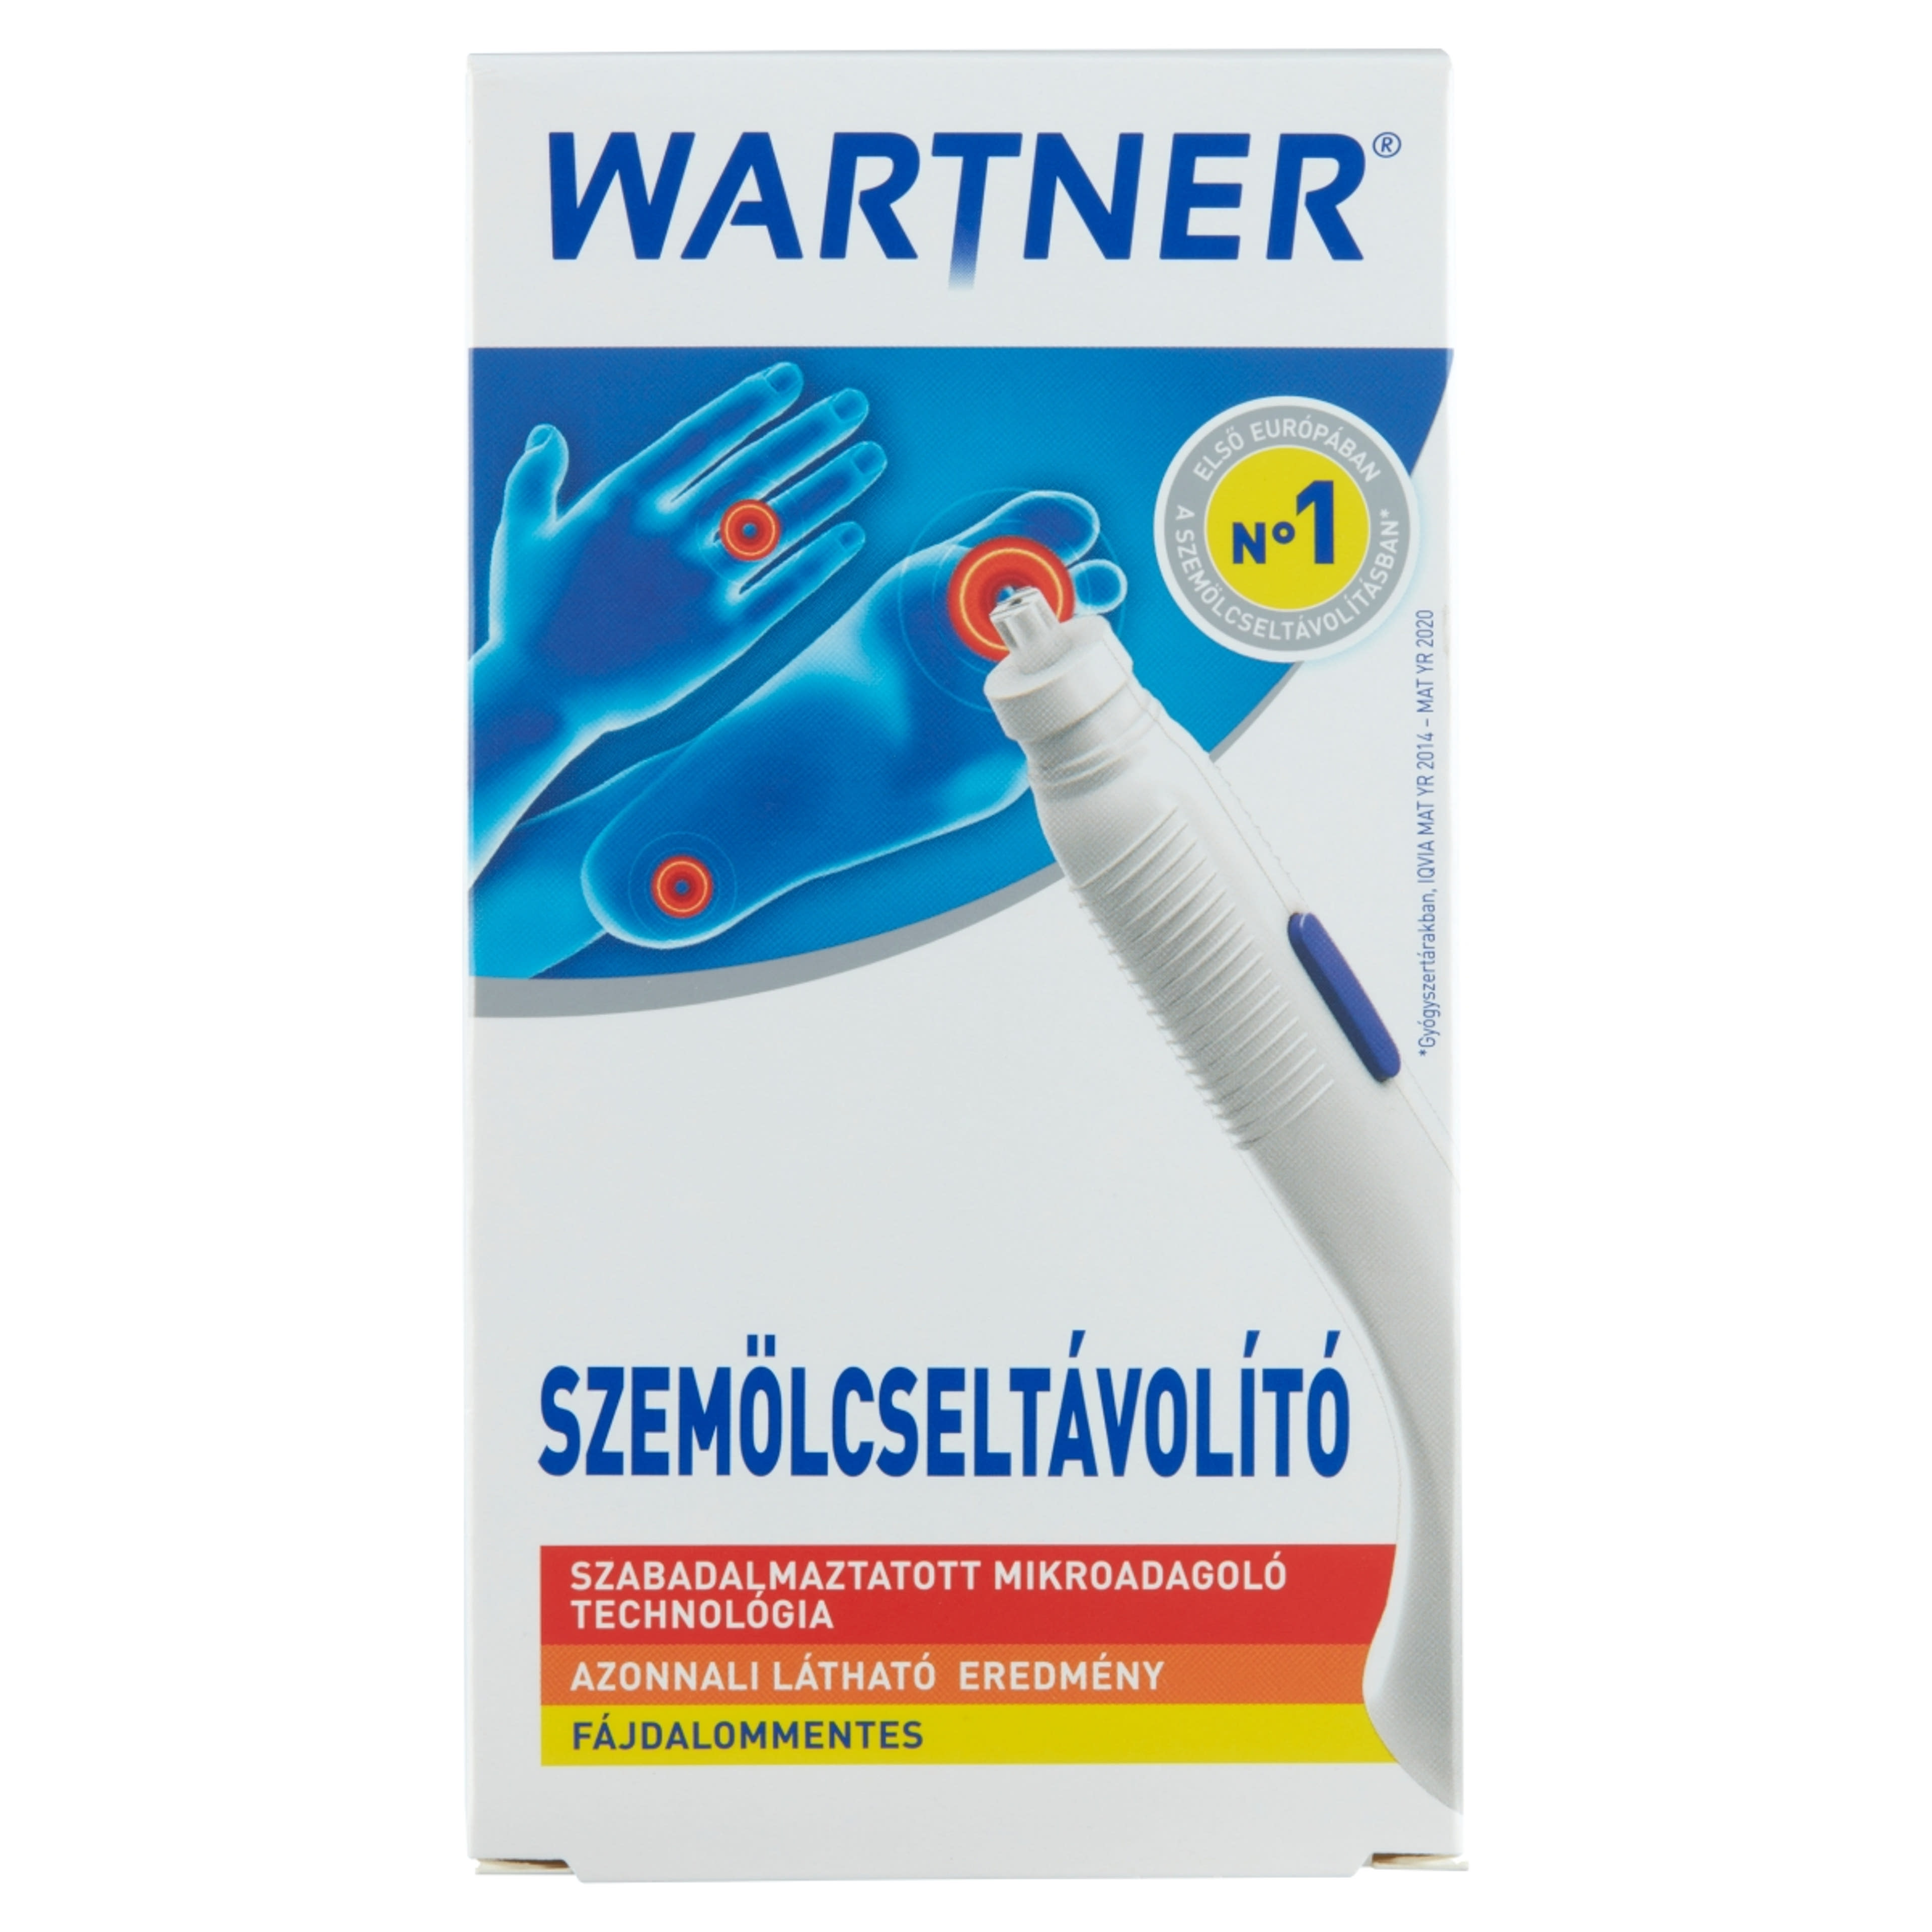 Wartner szemölcseltávolító stift 2.0 - 1,5 ml-1